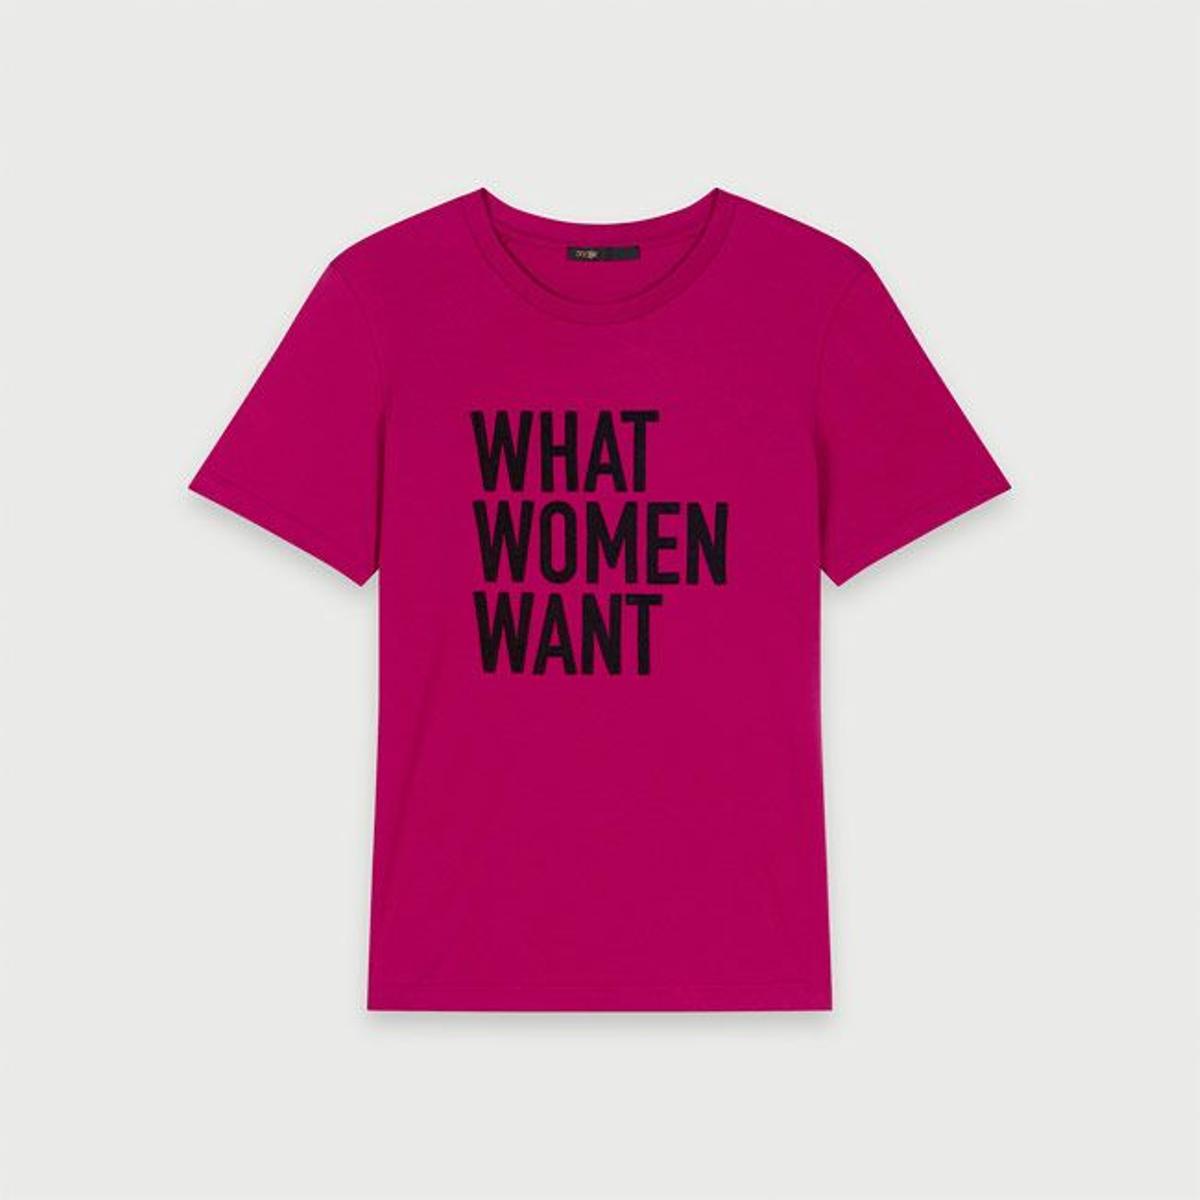 La camiseta feminista